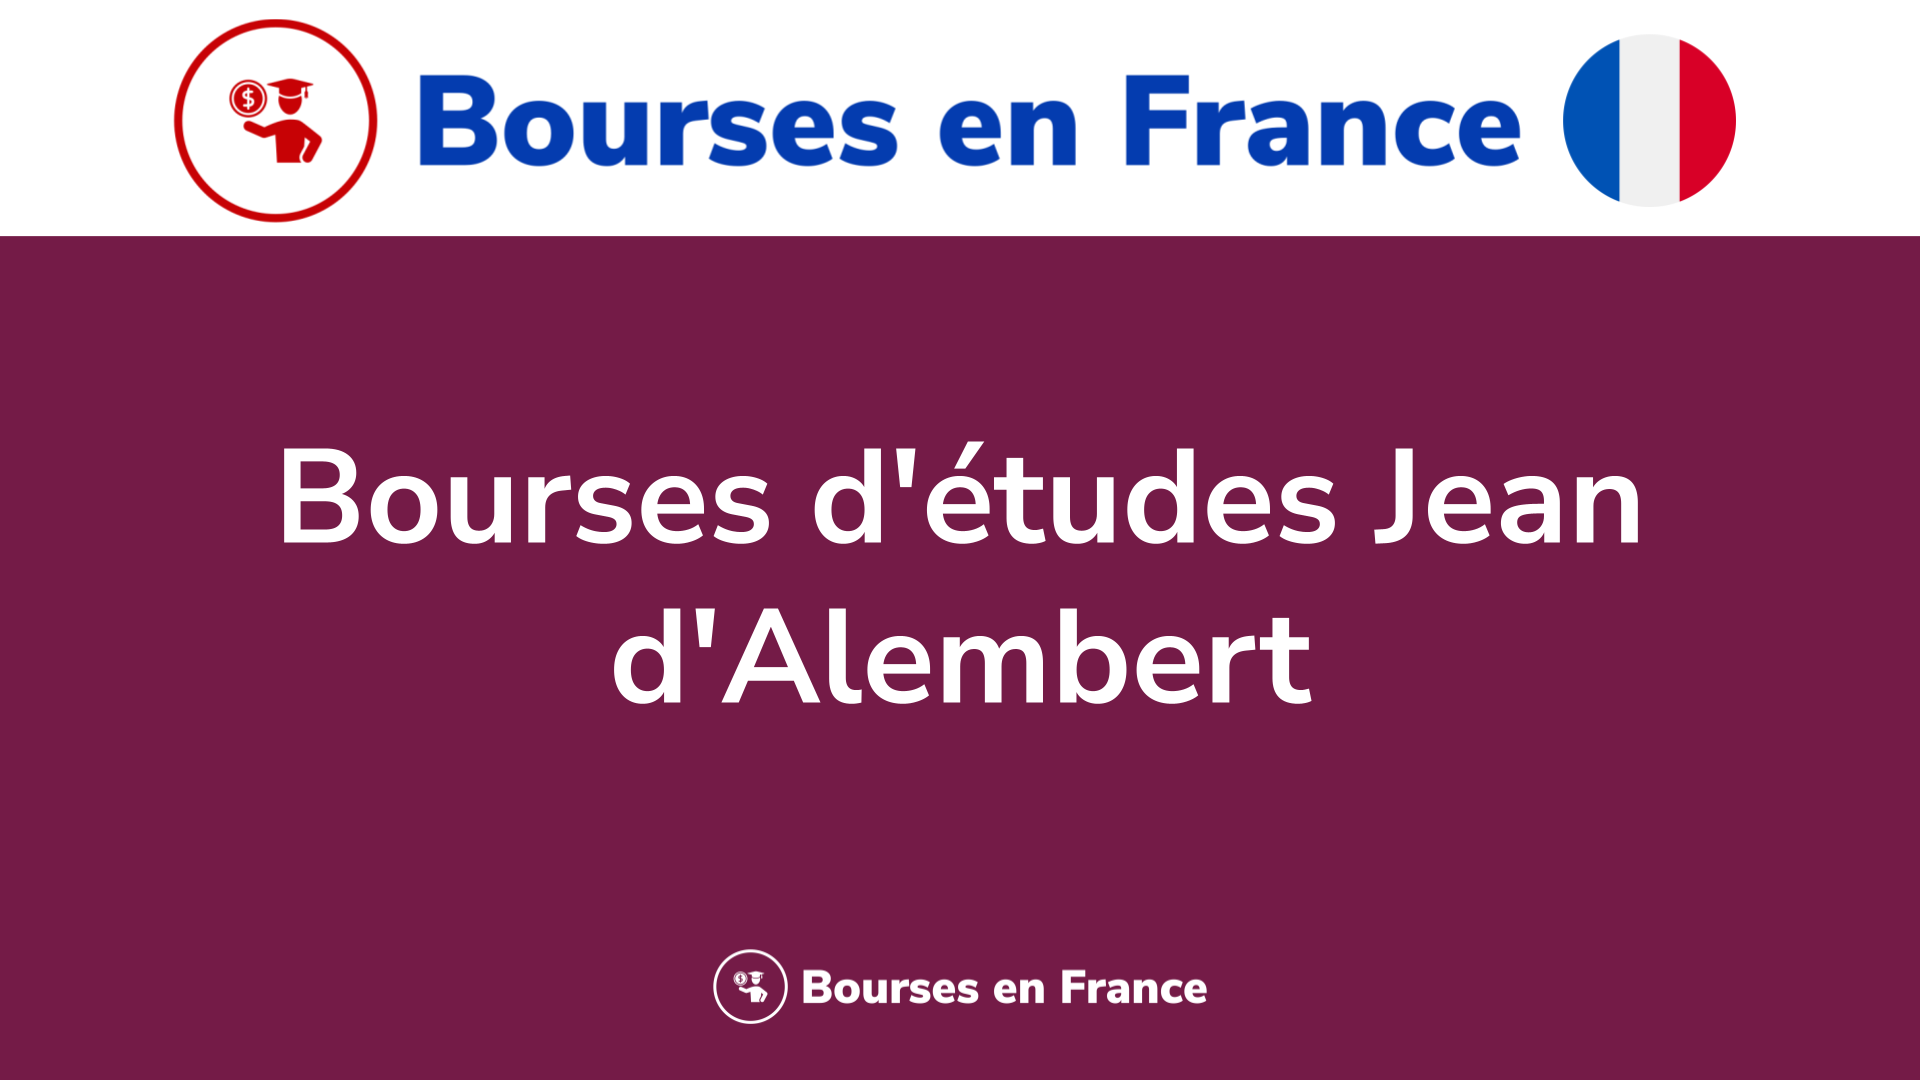 Bourses d'études Jean d'Alembert